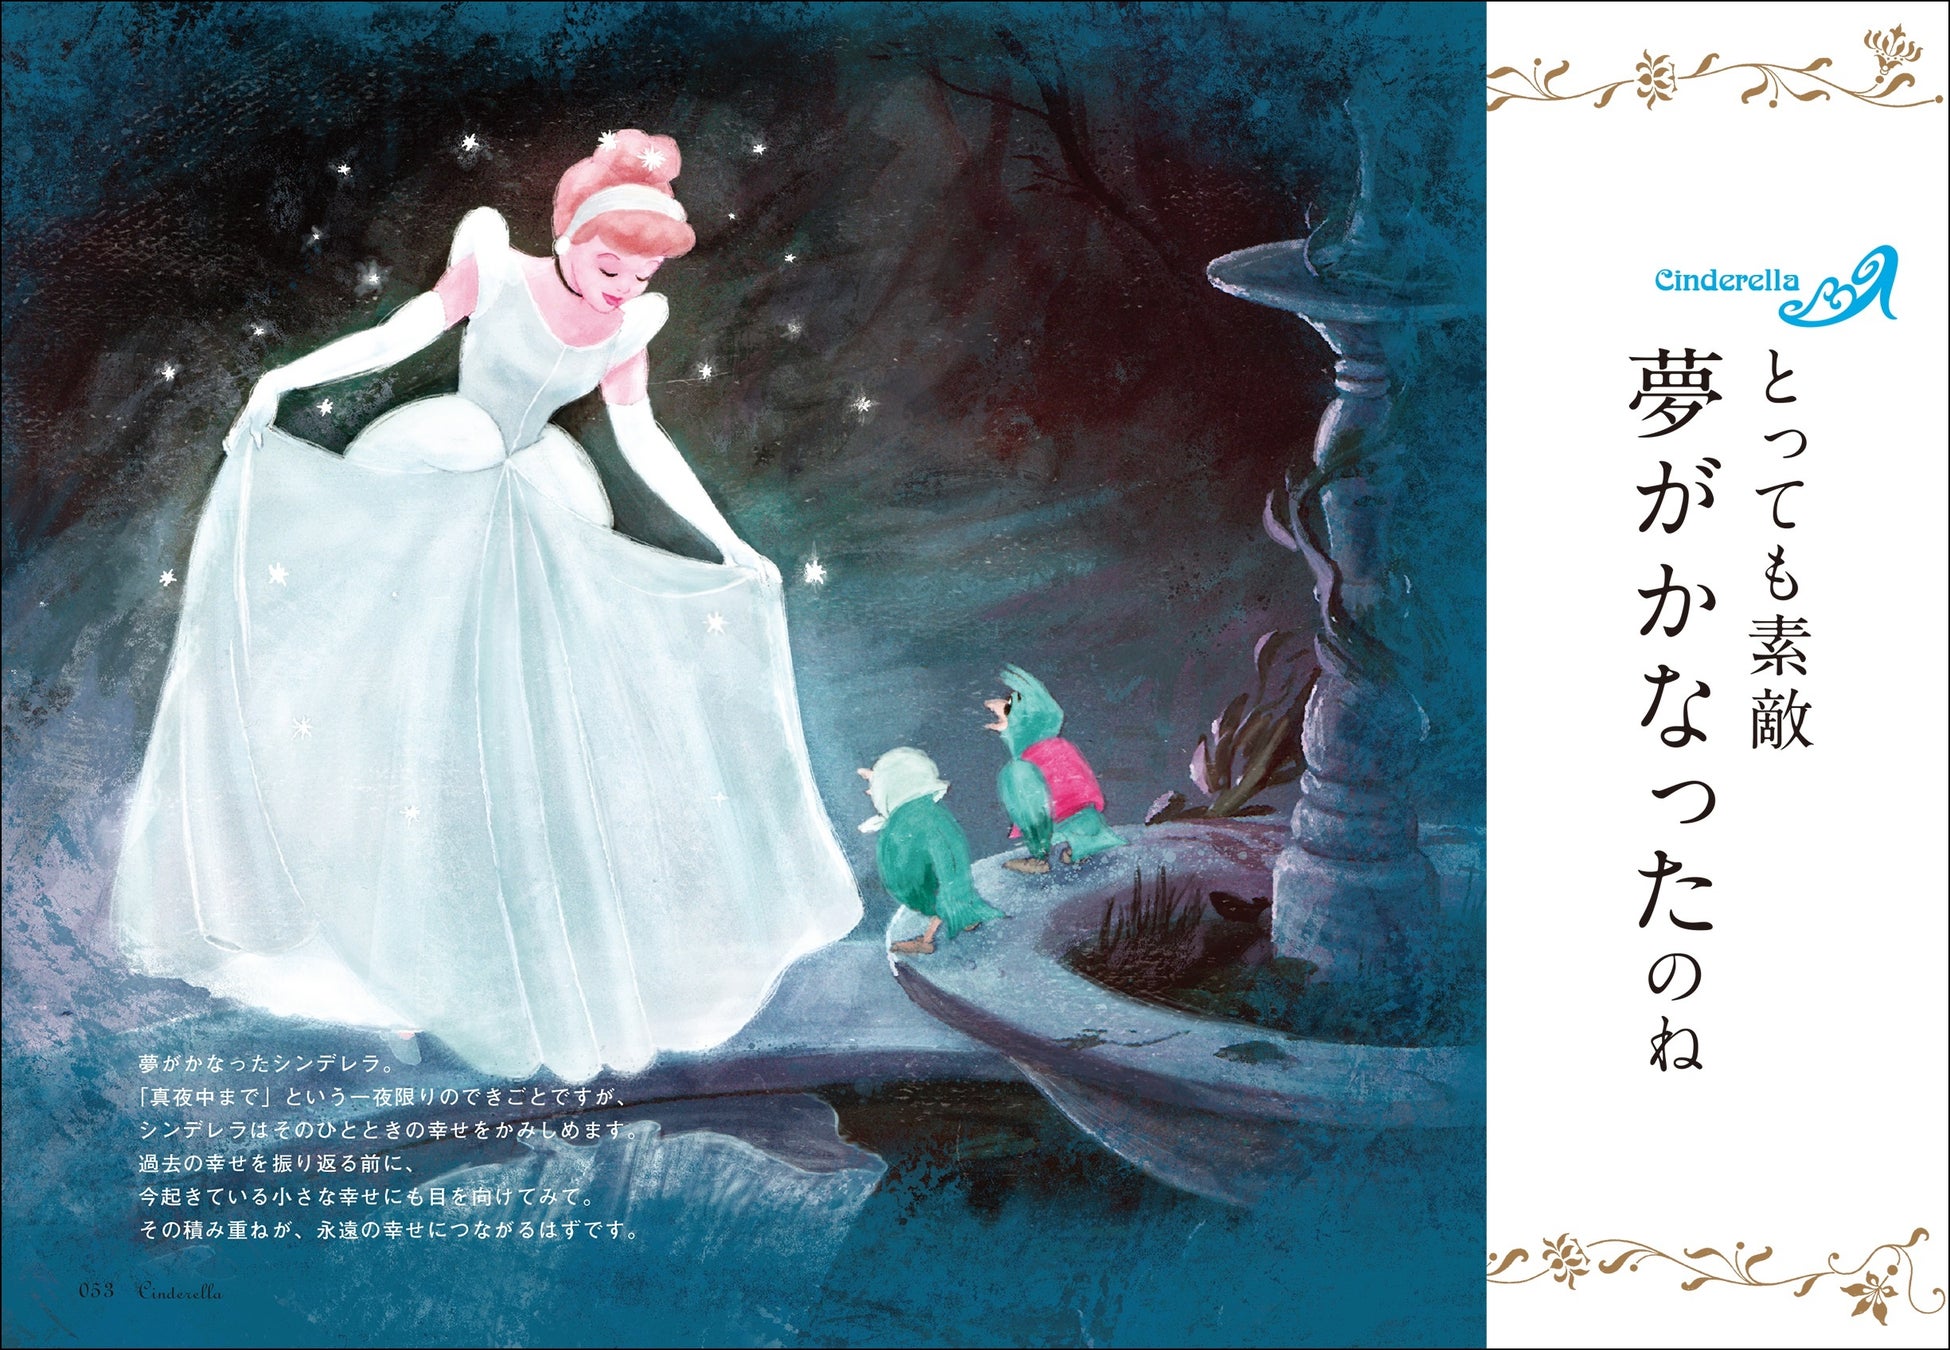 プレゼントにぴったり プリンセスの名言とイラストに癒される ディズニープリンセスのことば 幸せはずっとこの胸の中に 発売 株式会社kadokawaのプレスリリース